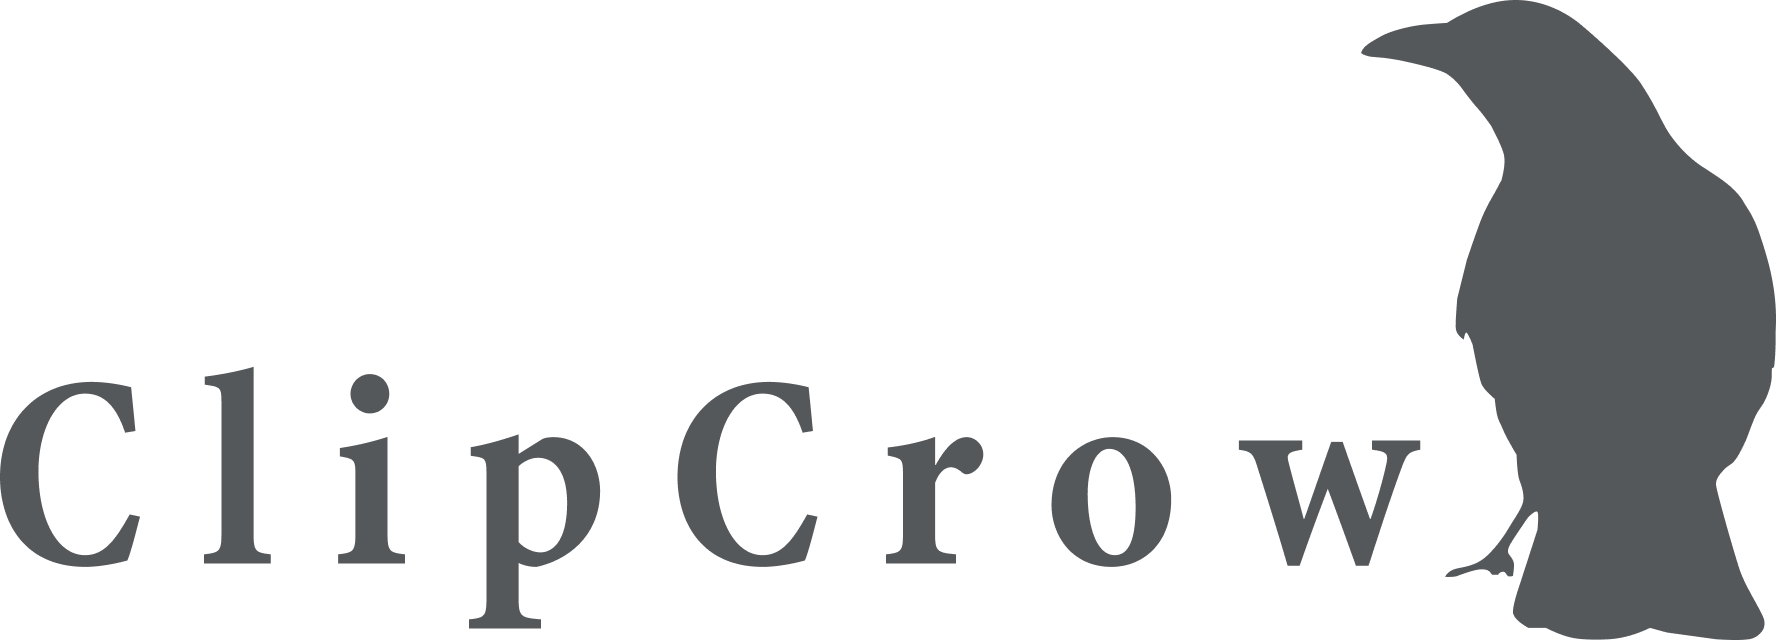 clipcrow logo